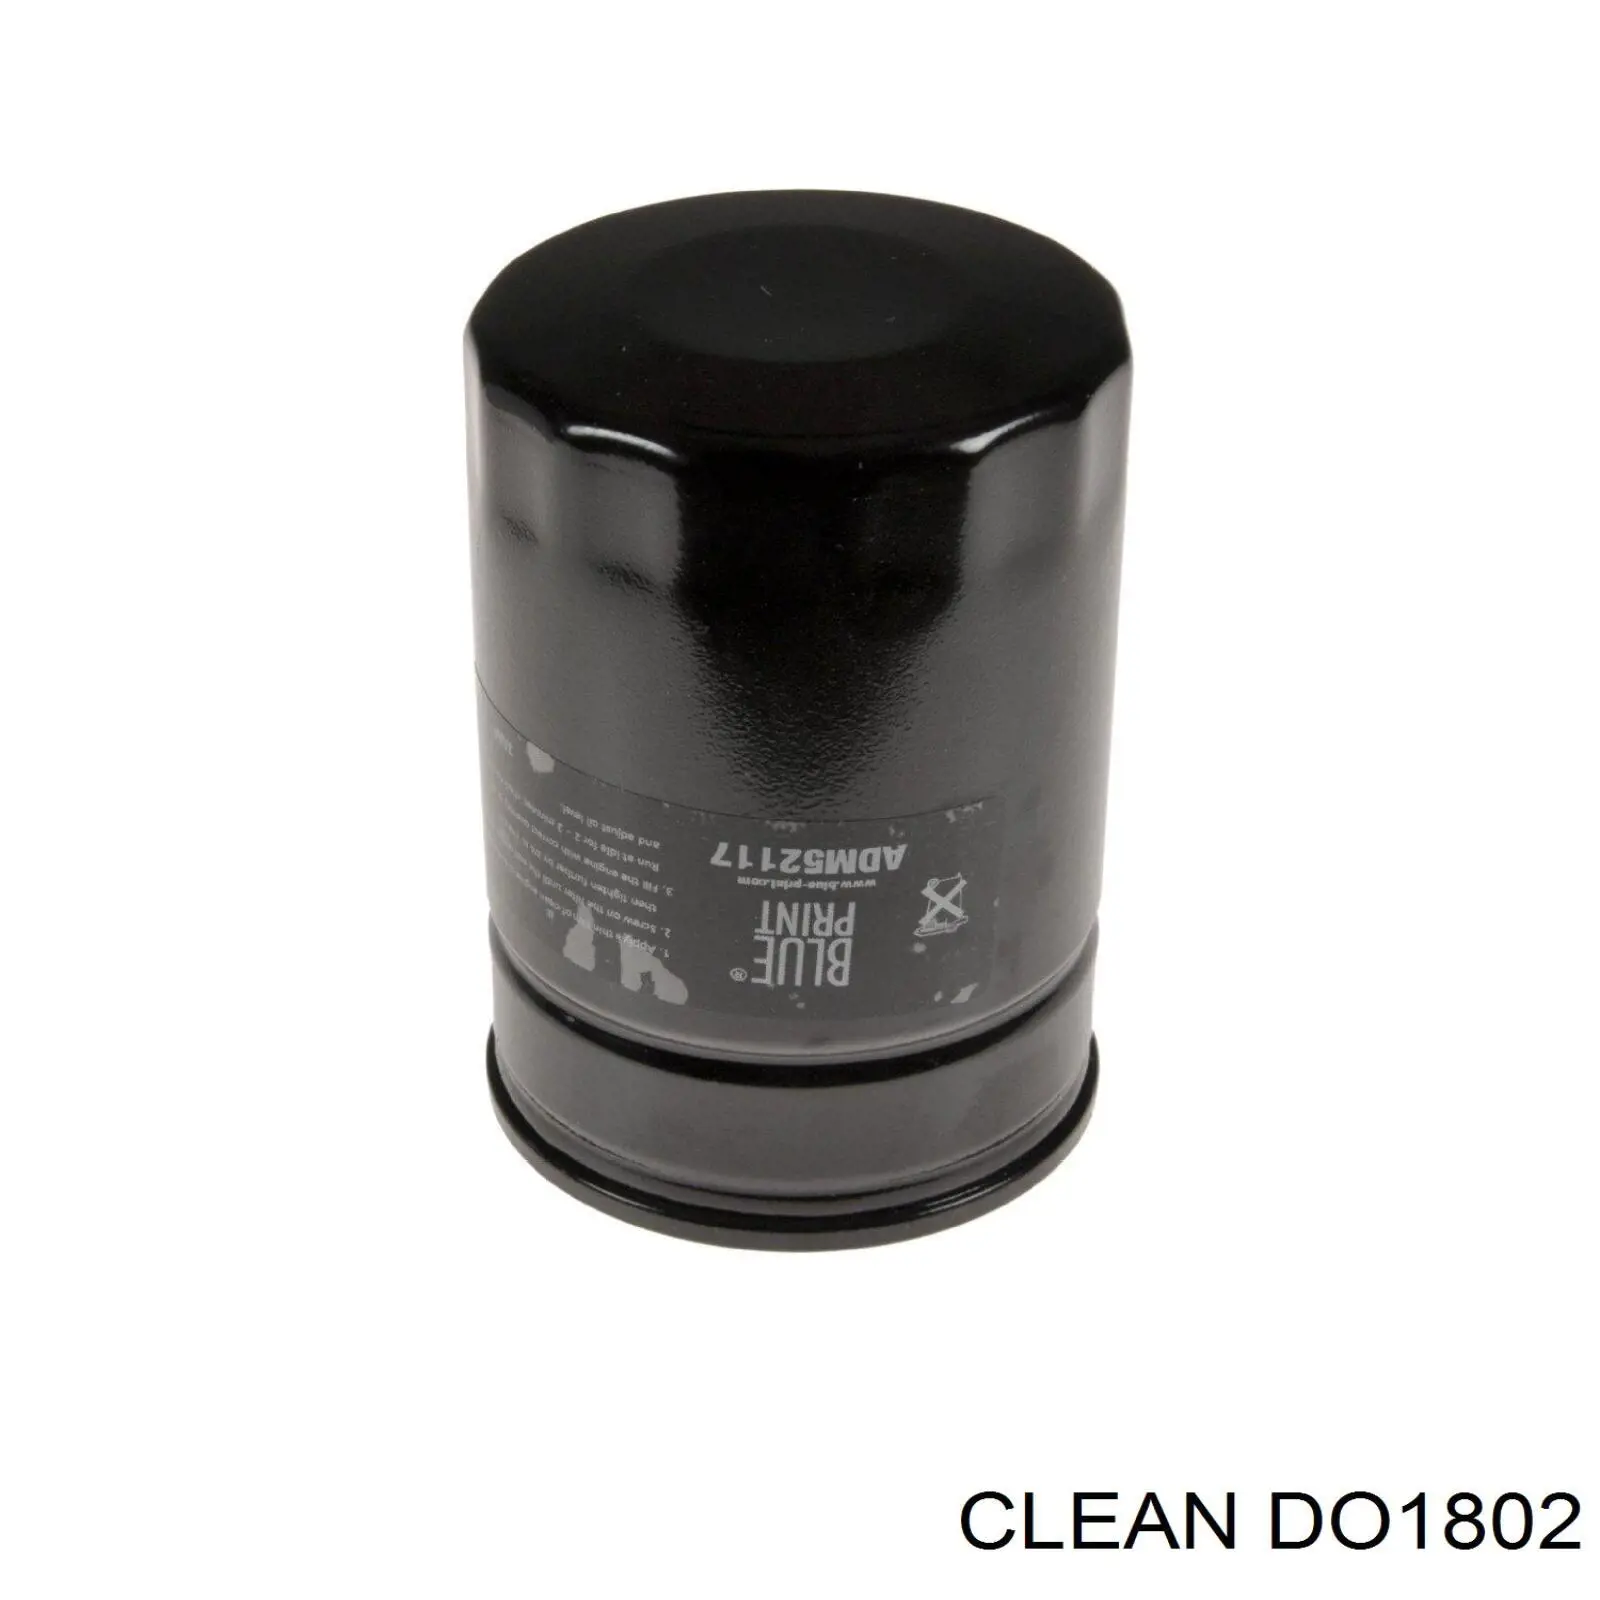 DO1802 Clean filtro de aceite